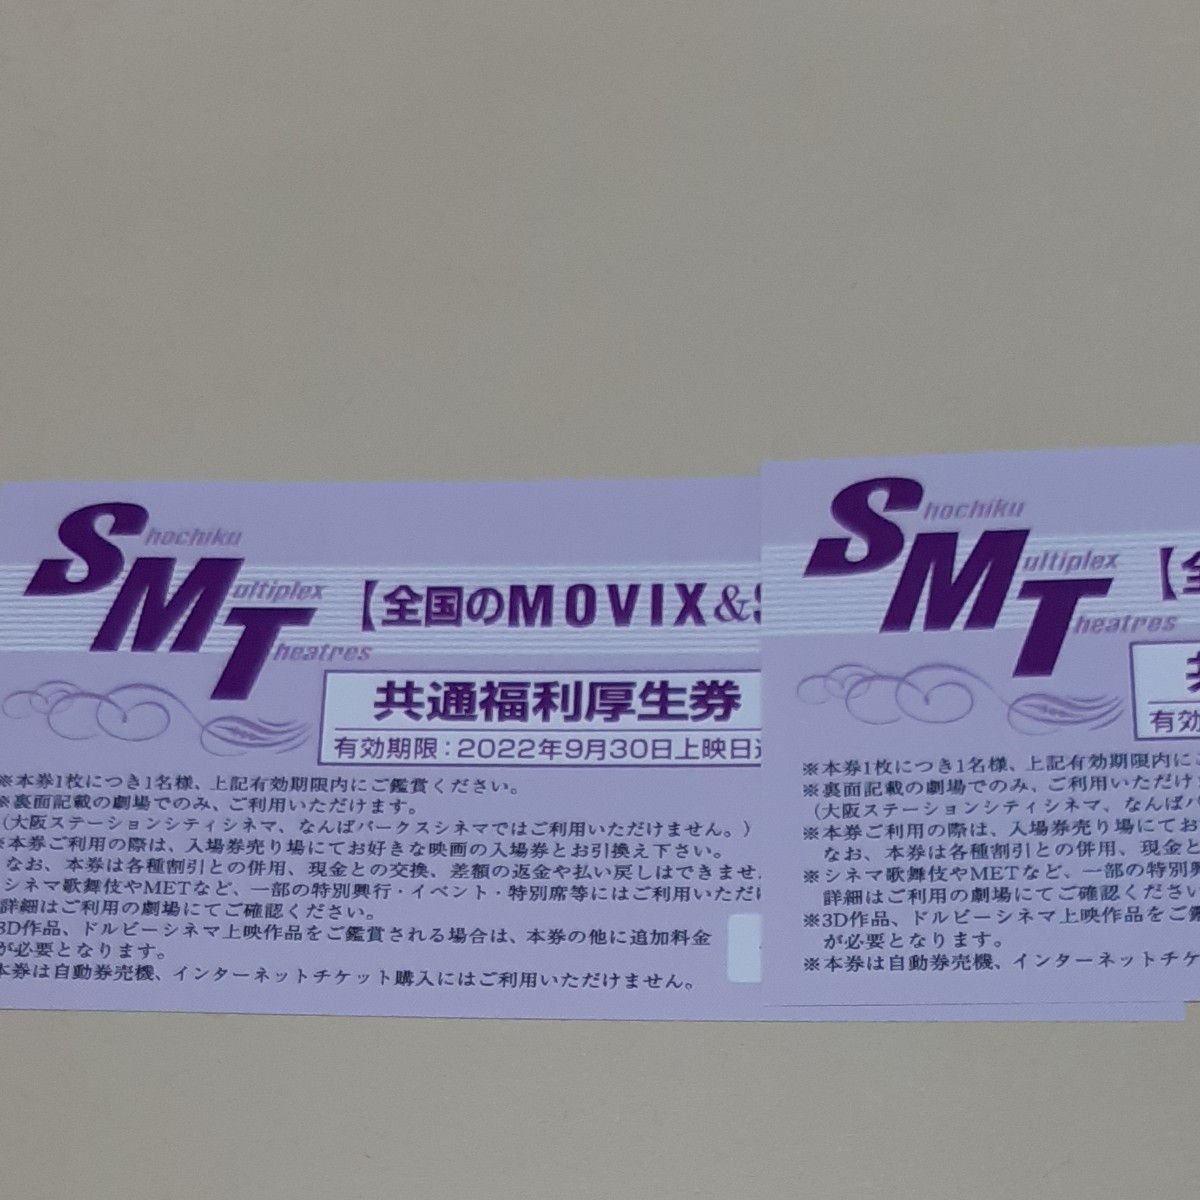 MOVIX＆SMT直営映画館 映画チケット 3枚 今だけスーパーセール限定 - 邦画